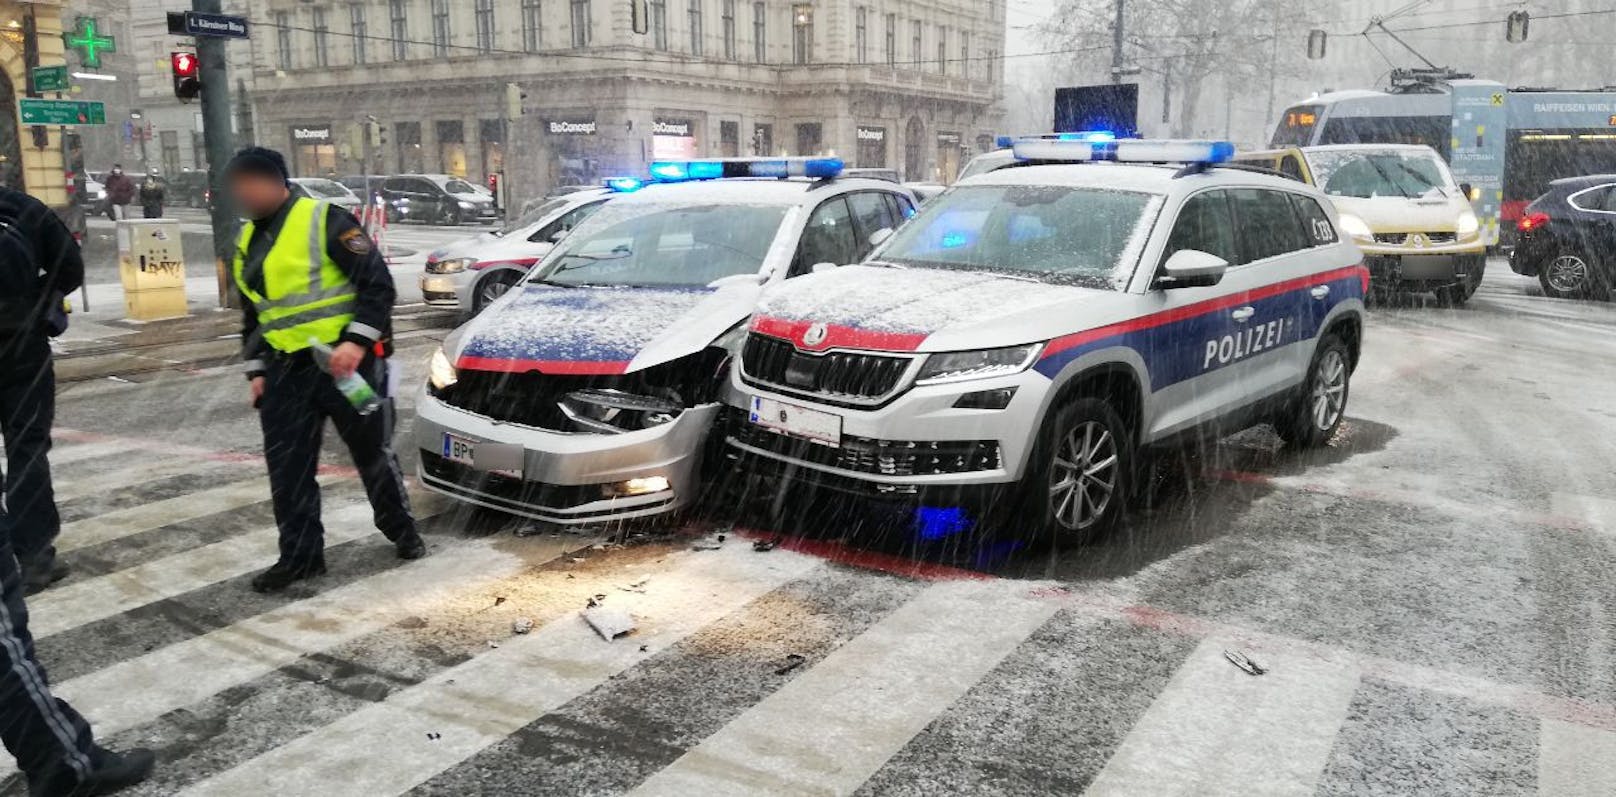 Neues Horn & Blaulicht/Fustw & HGrkW Polizei Wien 